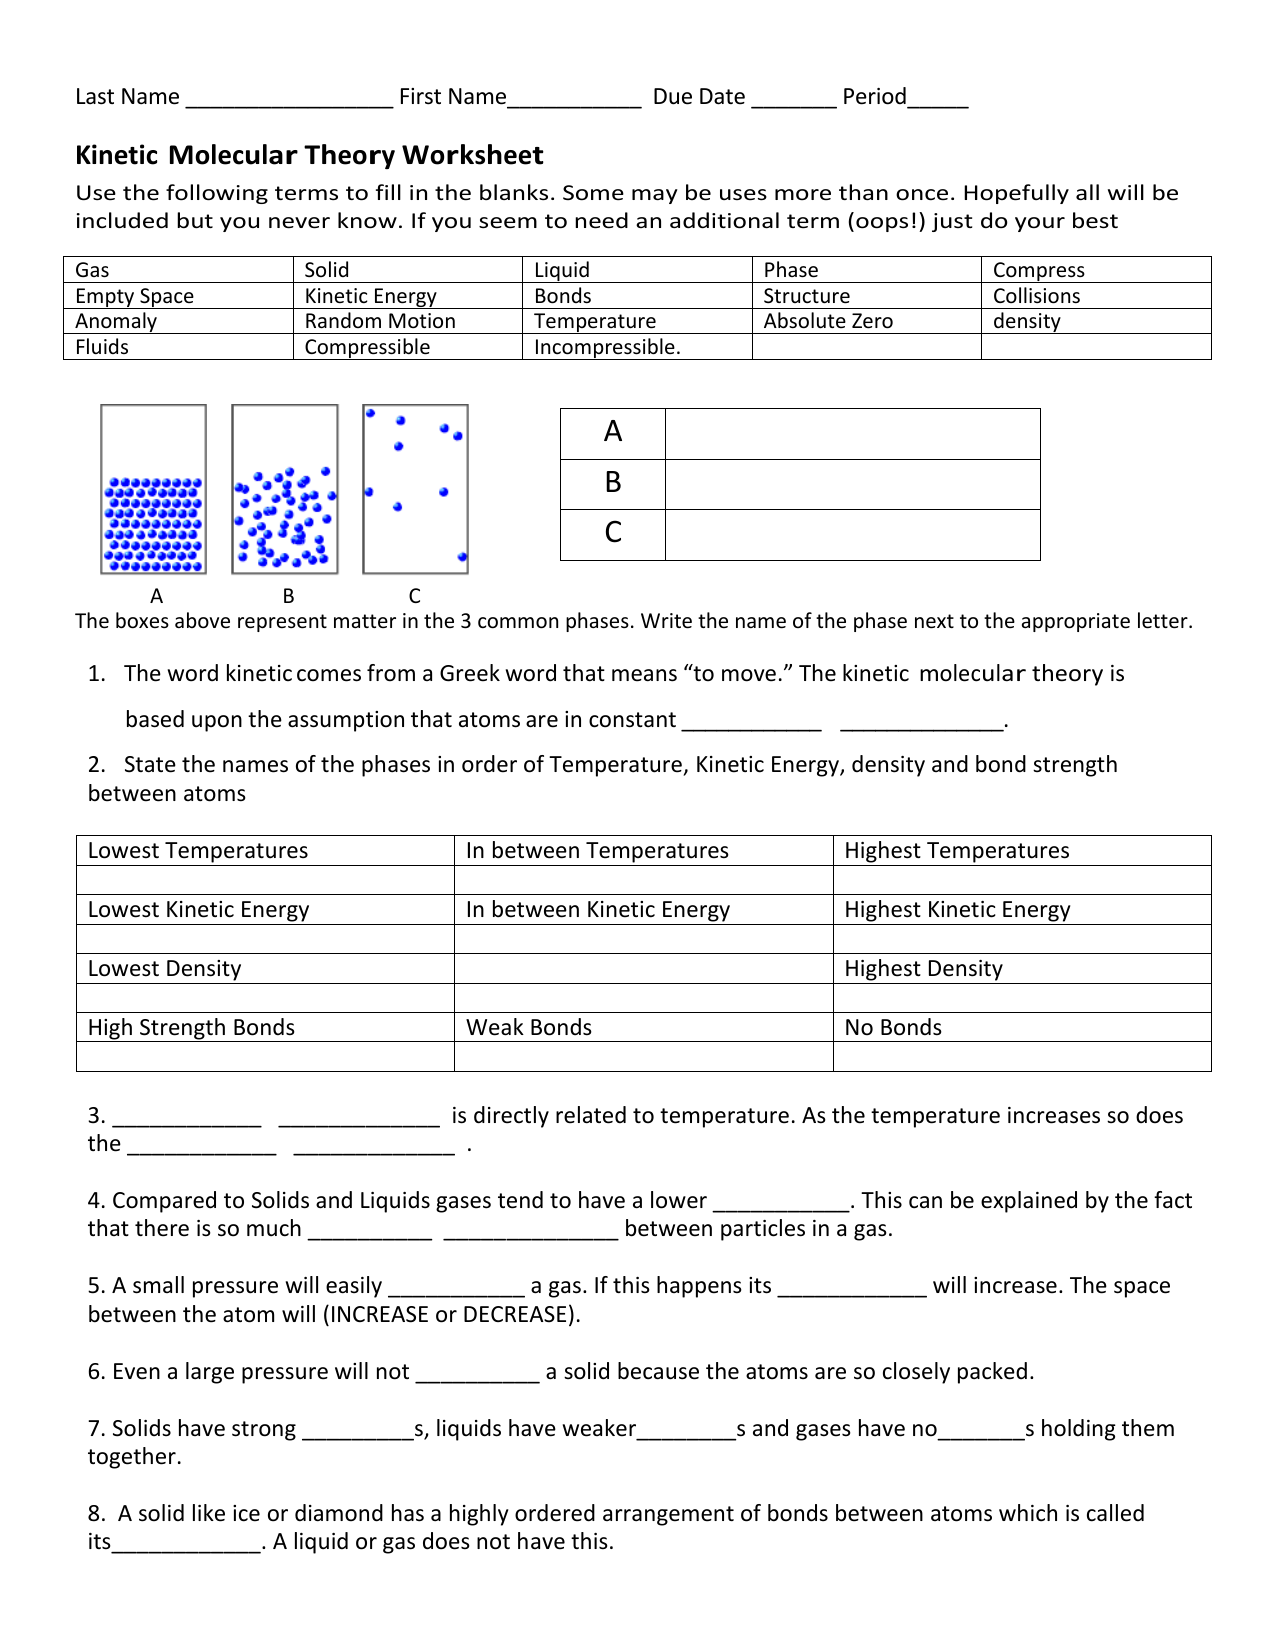 21-21 KMT Worksheet Regarding Kinetic Molecular Theory Worksheet